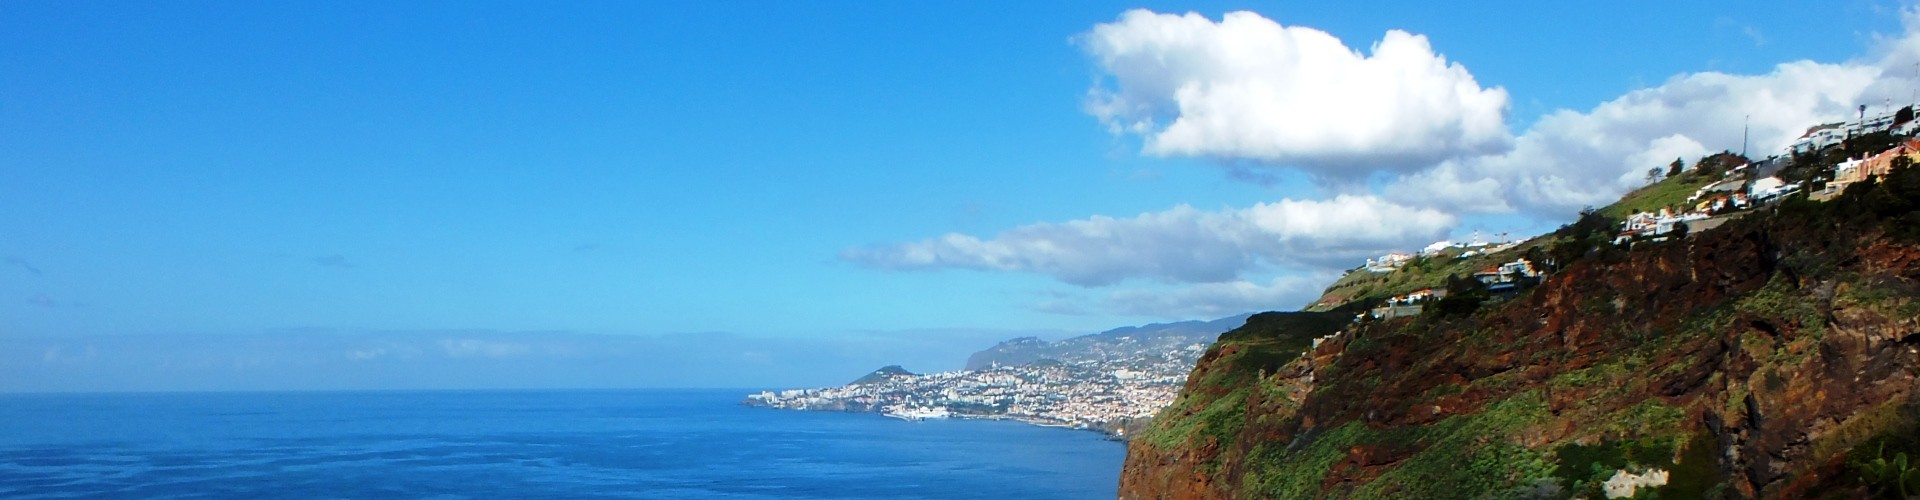 Tuk Tuk Tour -  Miradouros fora do Funchal & Garajau -Cristo Rei